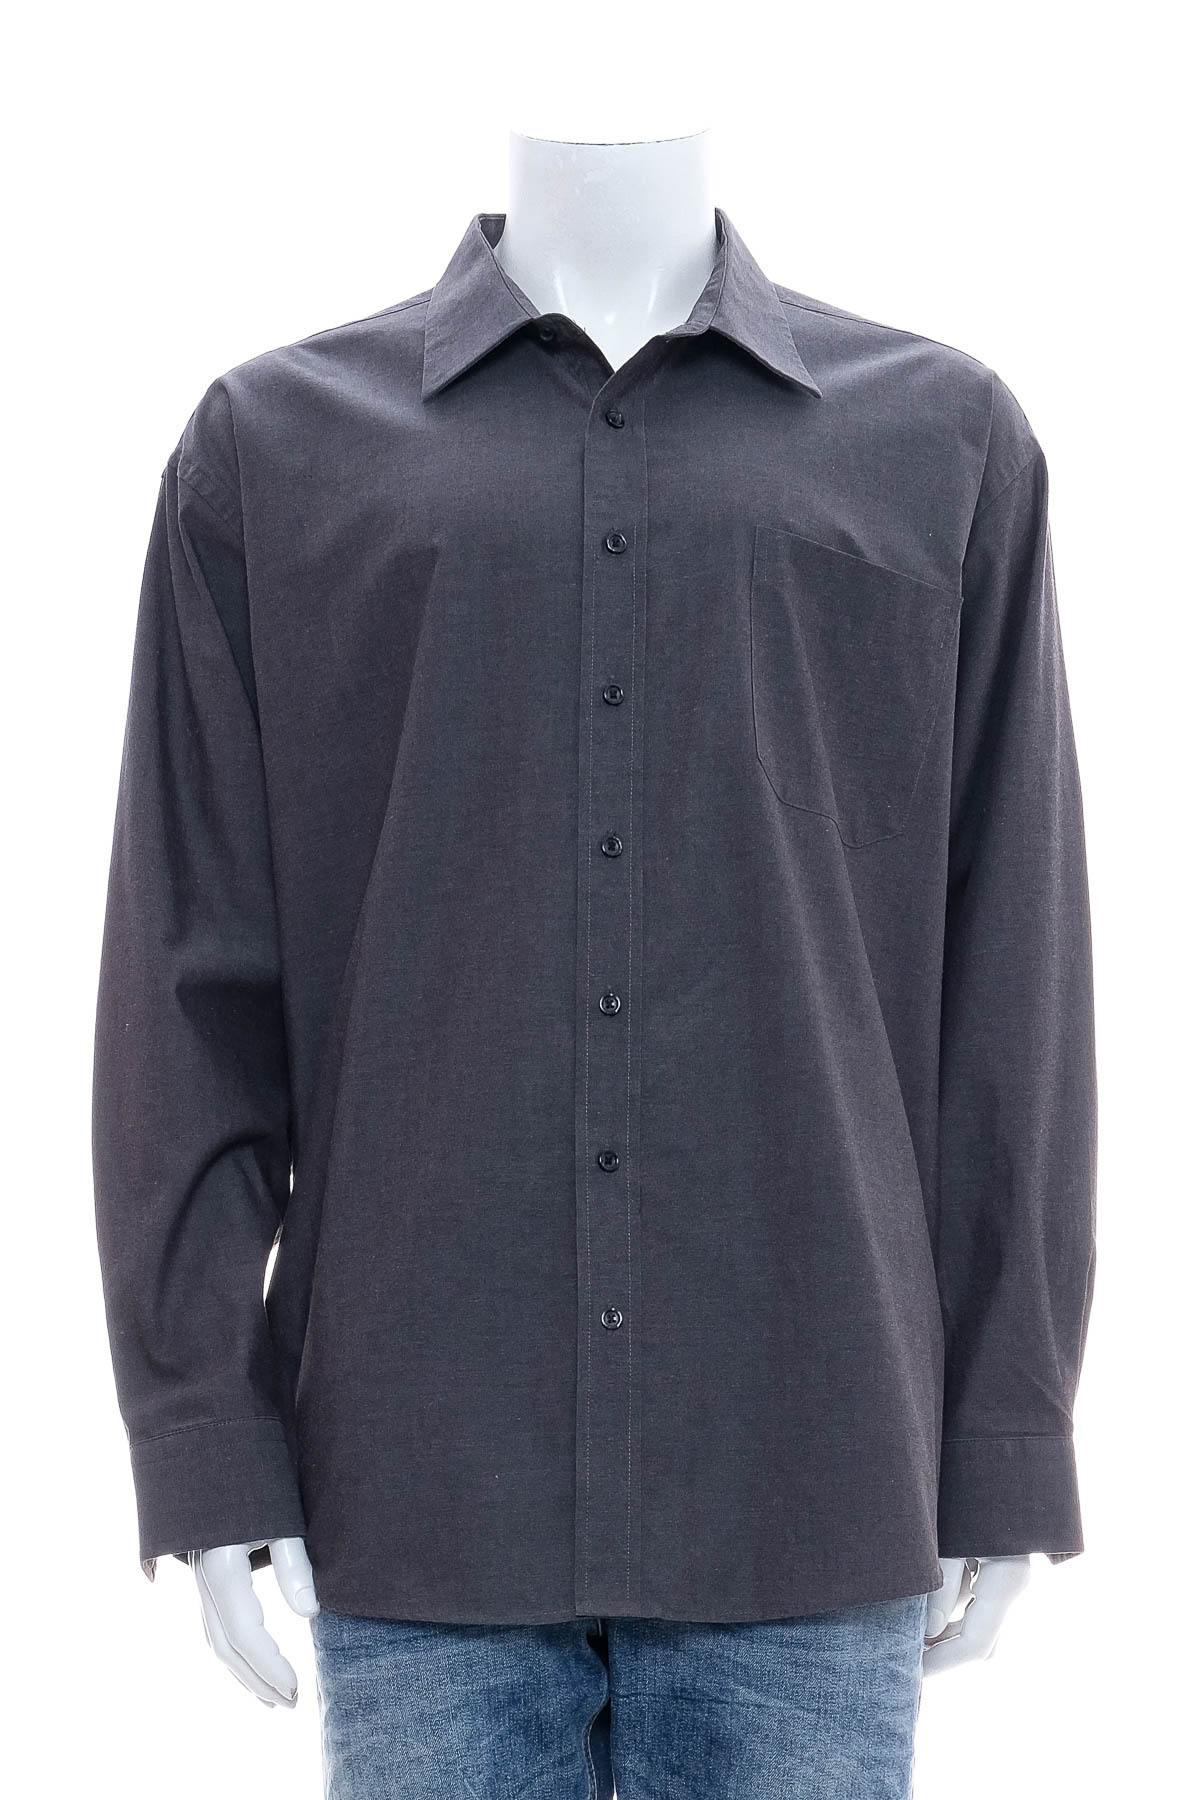 Ανδρικό πουκάμισο - Finest Tailor - 0